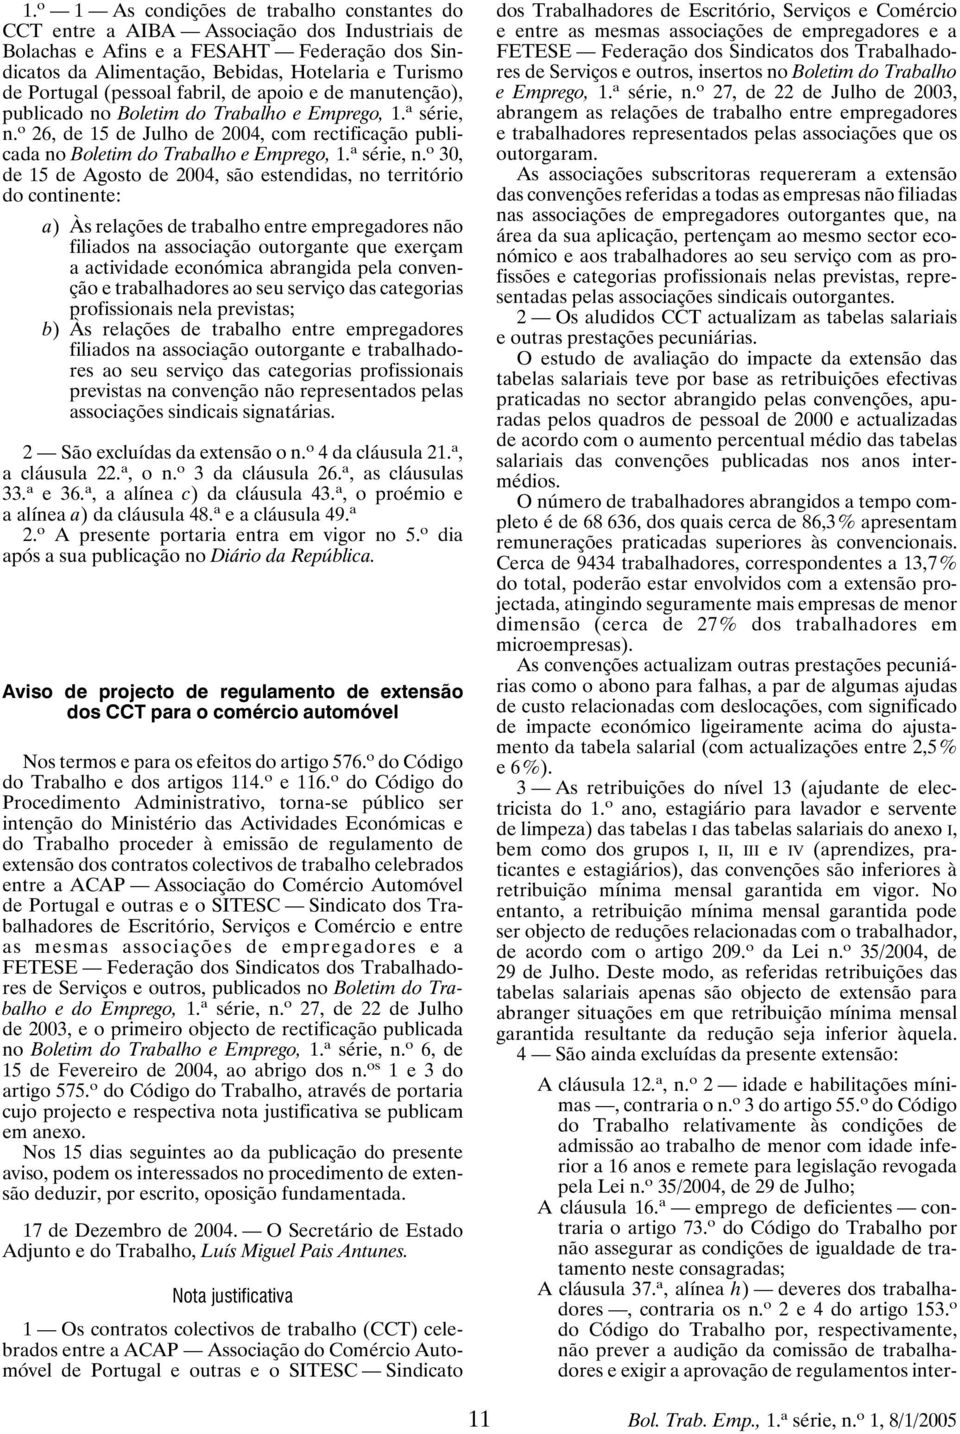 o 26, de 15 de Julho de 2004, com rectificação publicada no Boletim do Trabalho e Emprego, 1. a série, n.